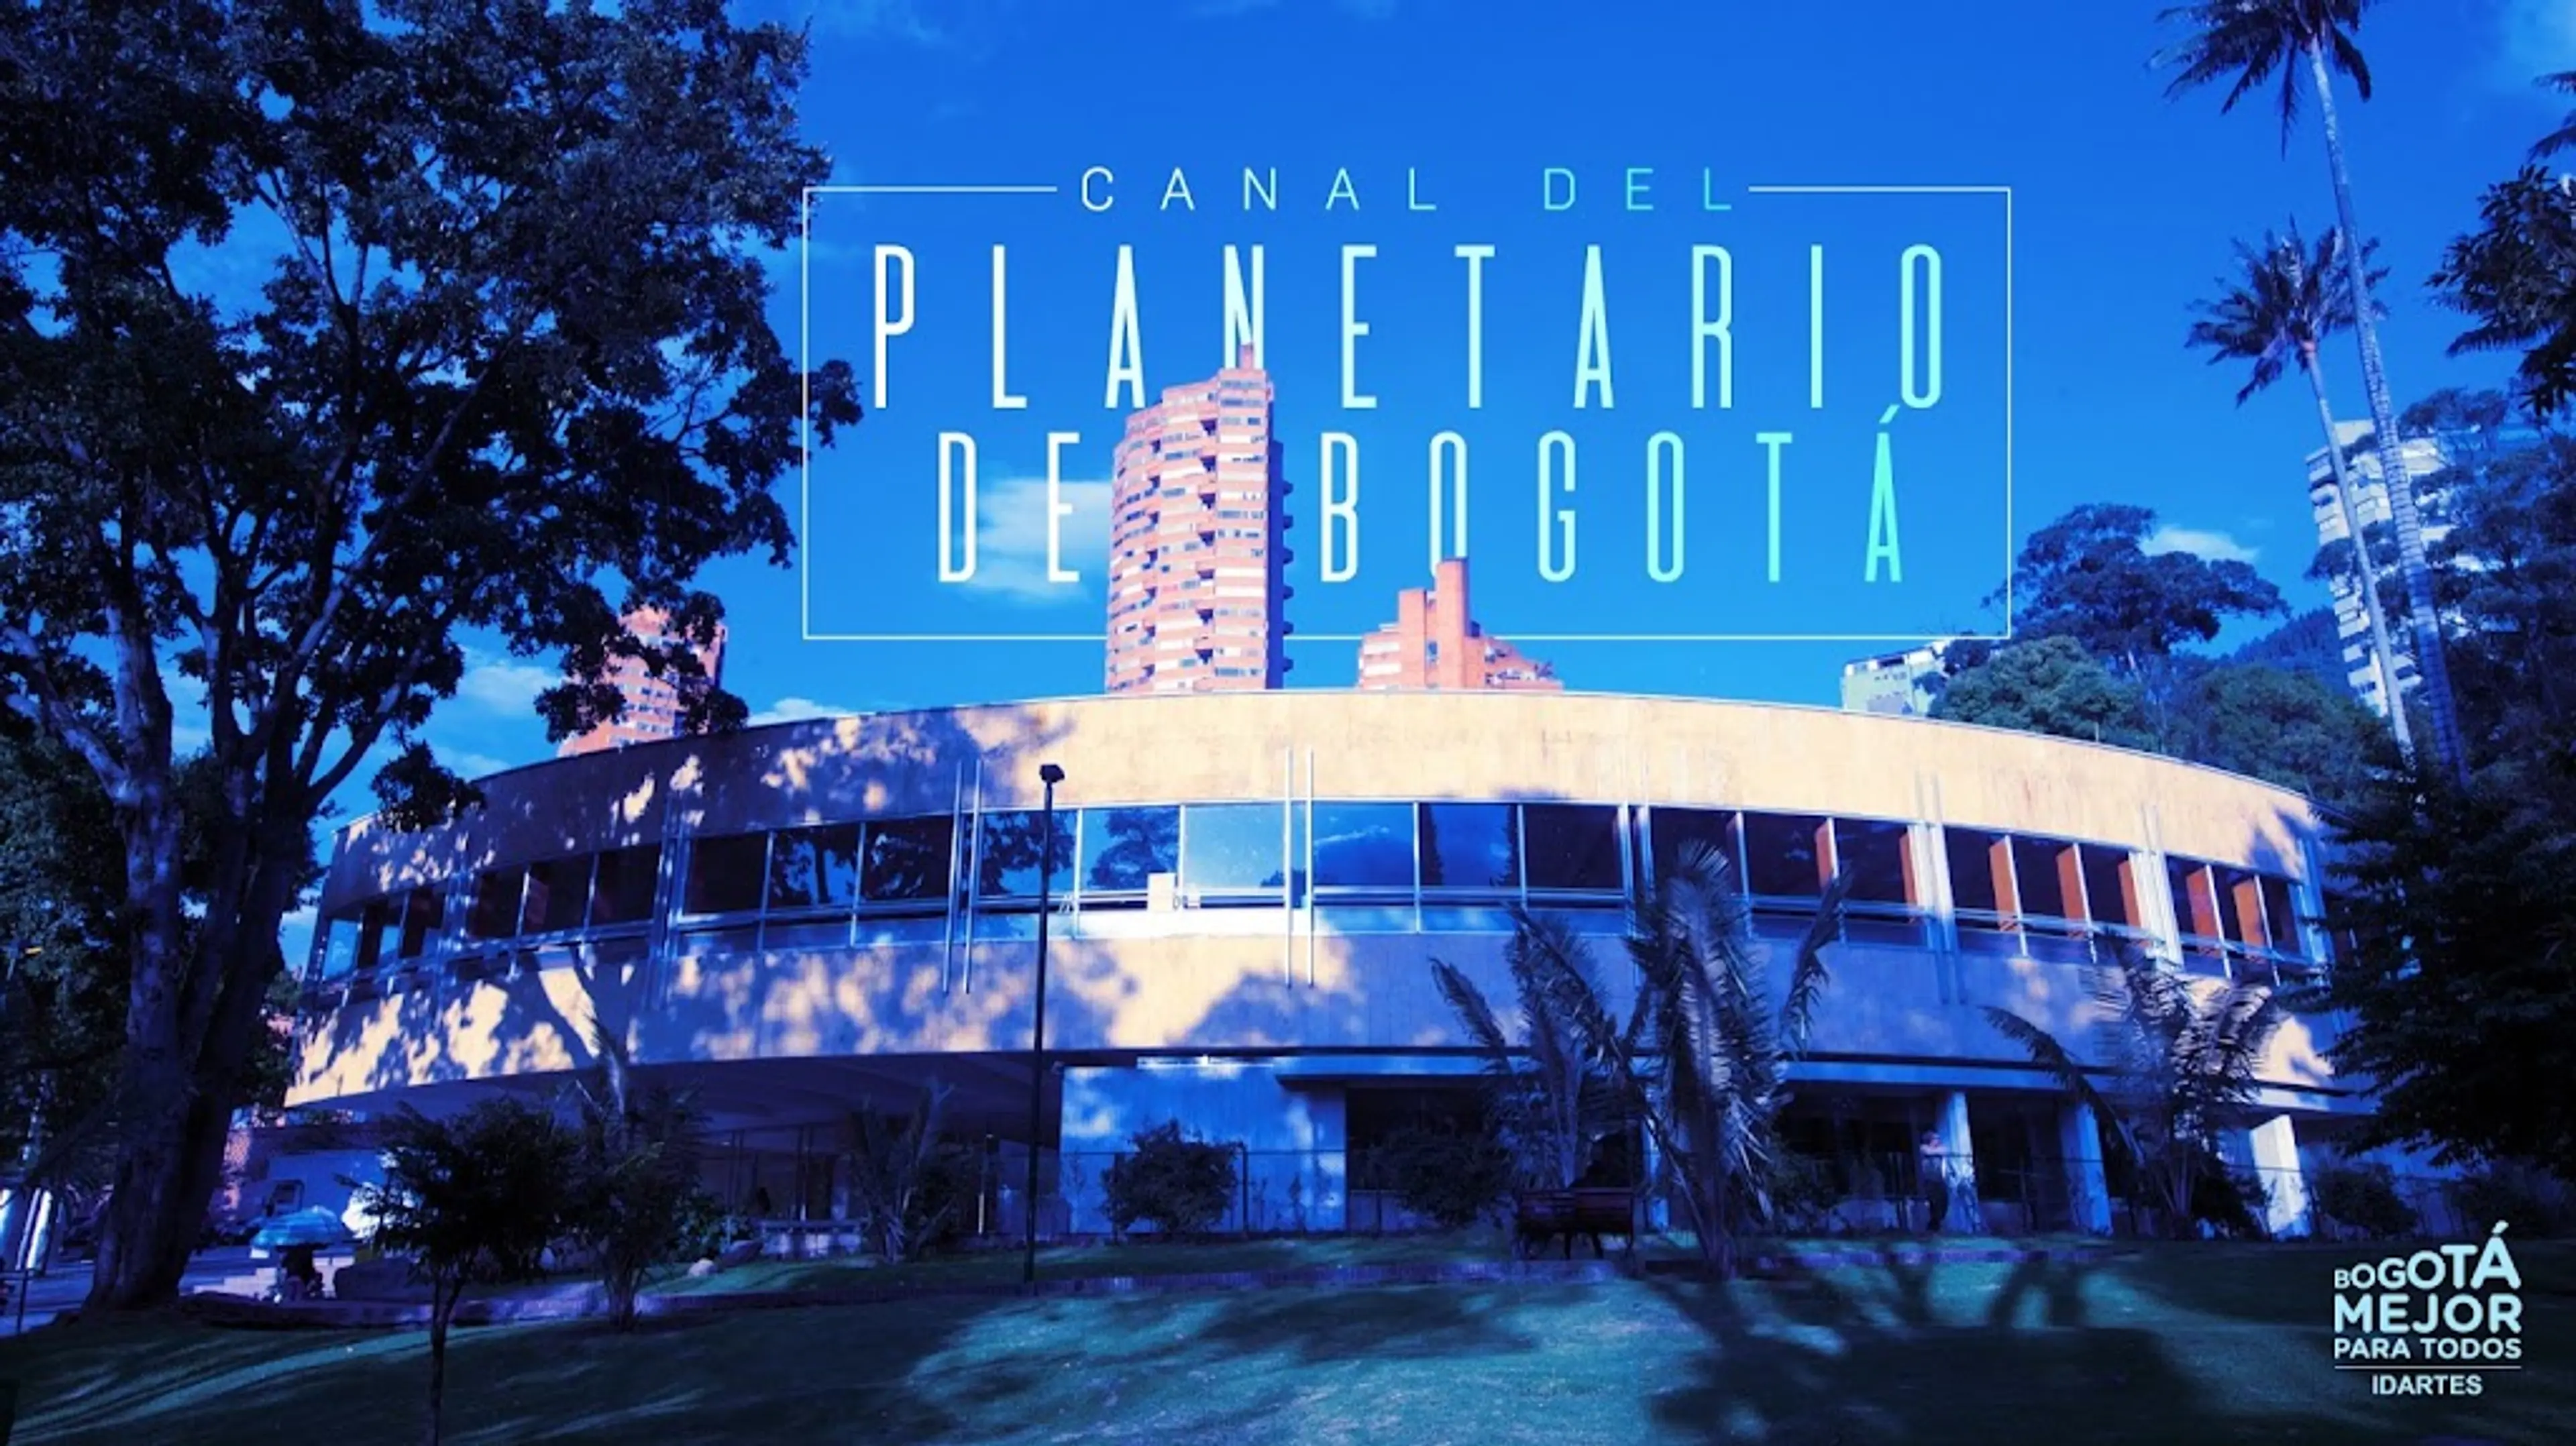 Planetarium of Bogota